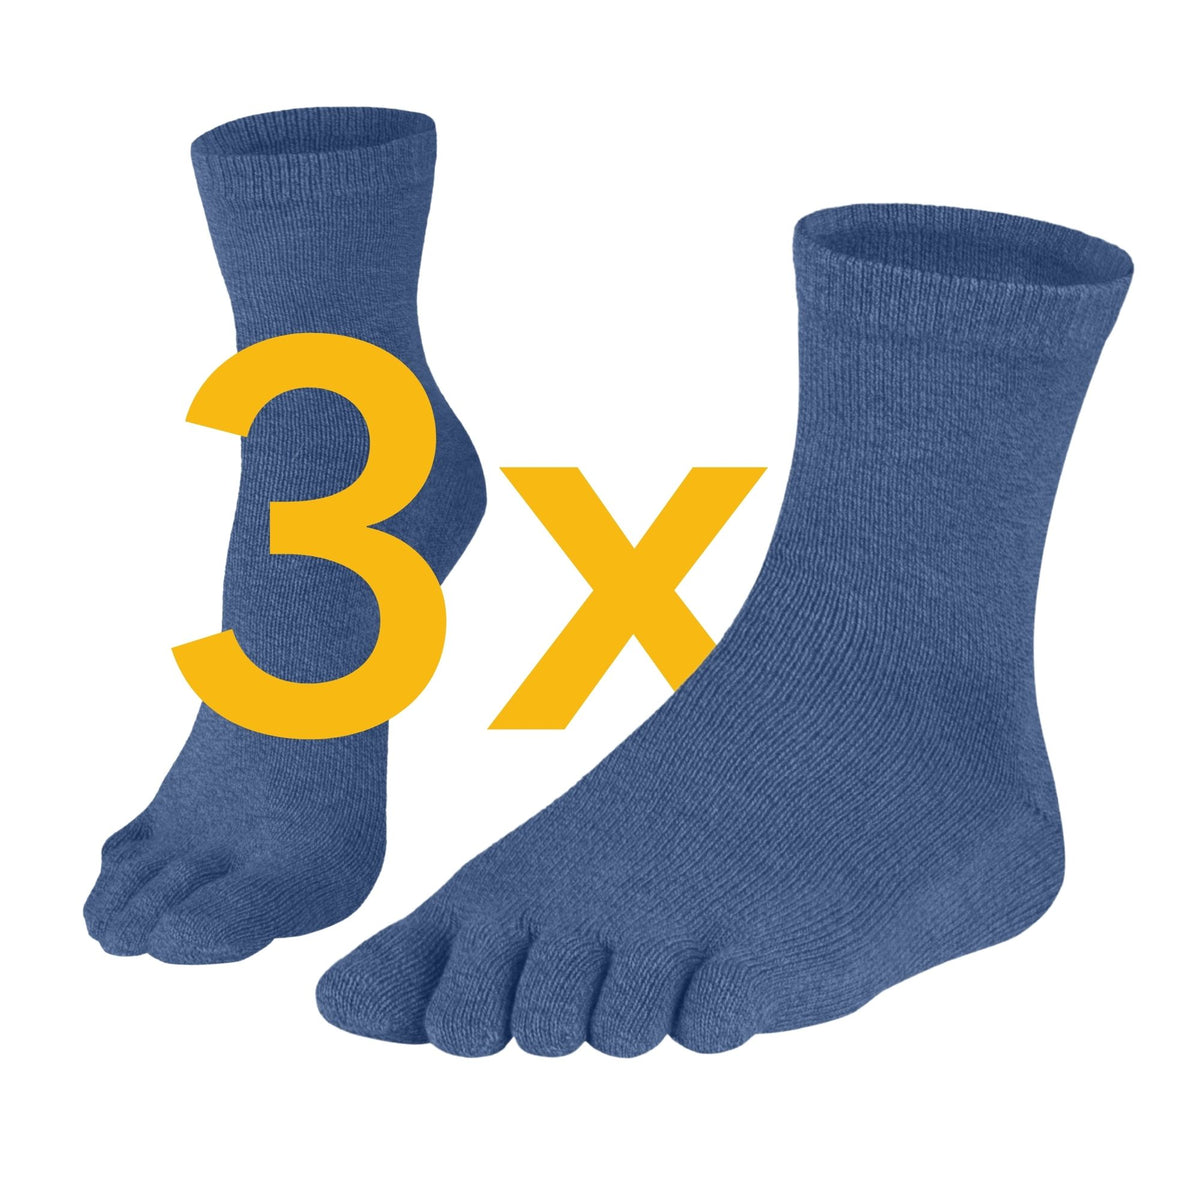 Knitido Essentials Midi Blue - Calzado Barefoot